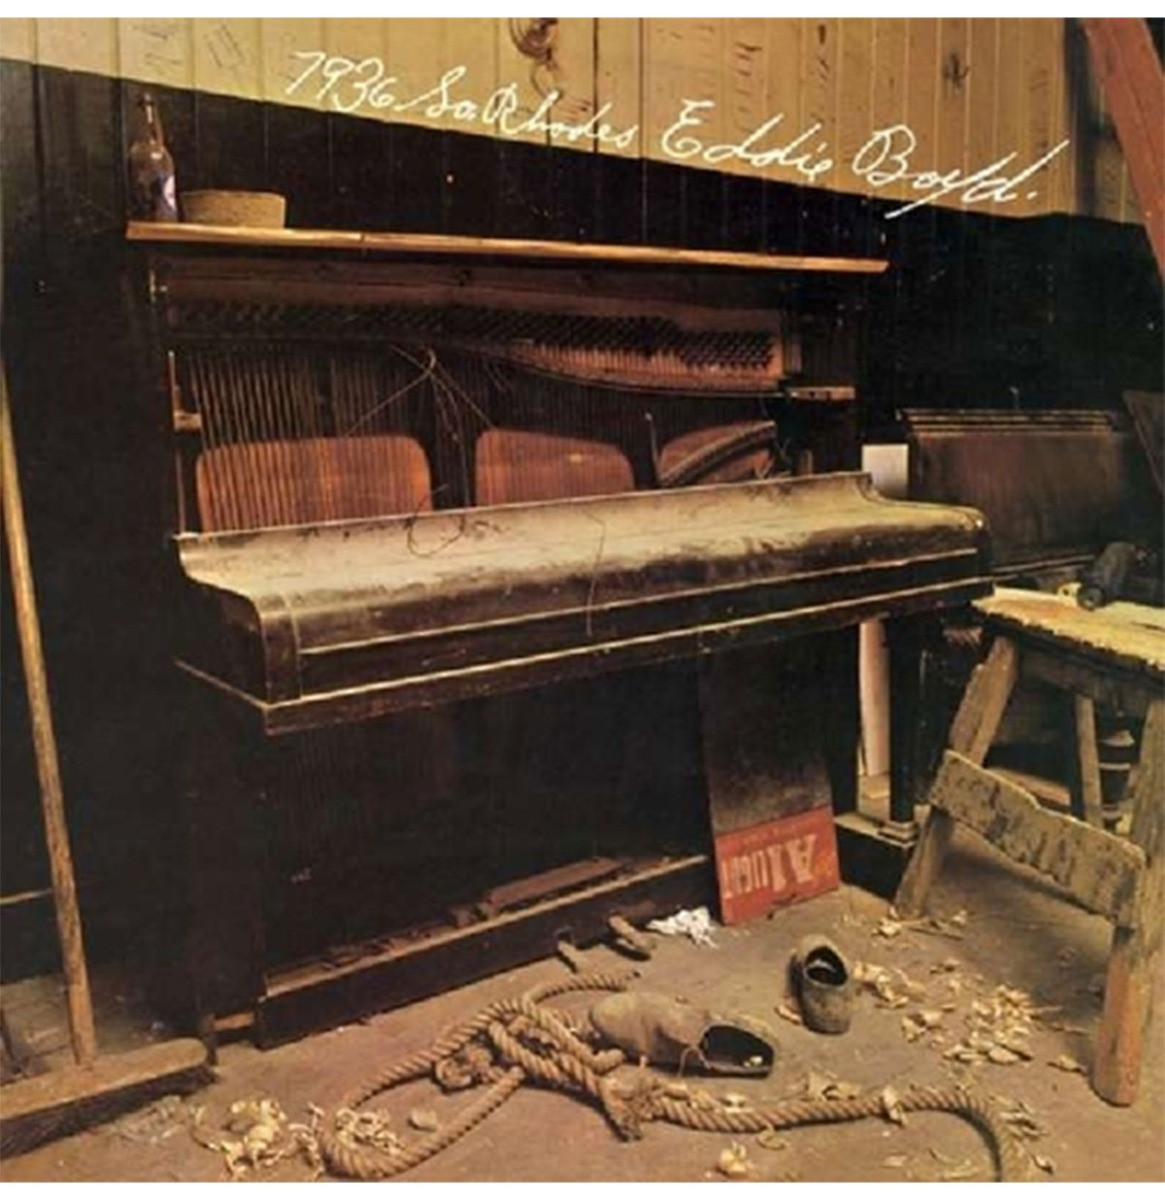 Eddie Boyd & Fleetwood Mac - 7936 South Rhodes LP